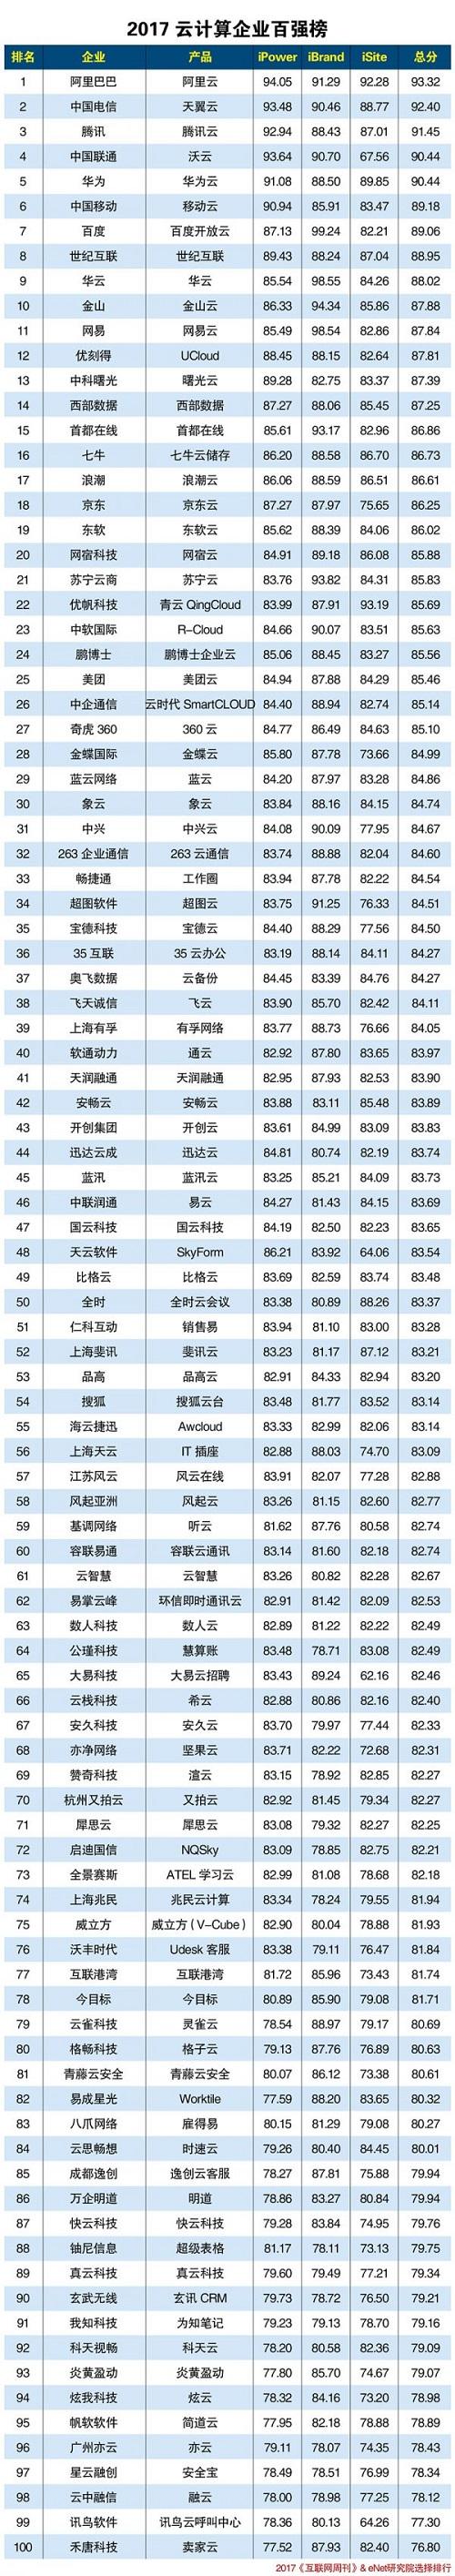 2017中国云计算企业百强榜